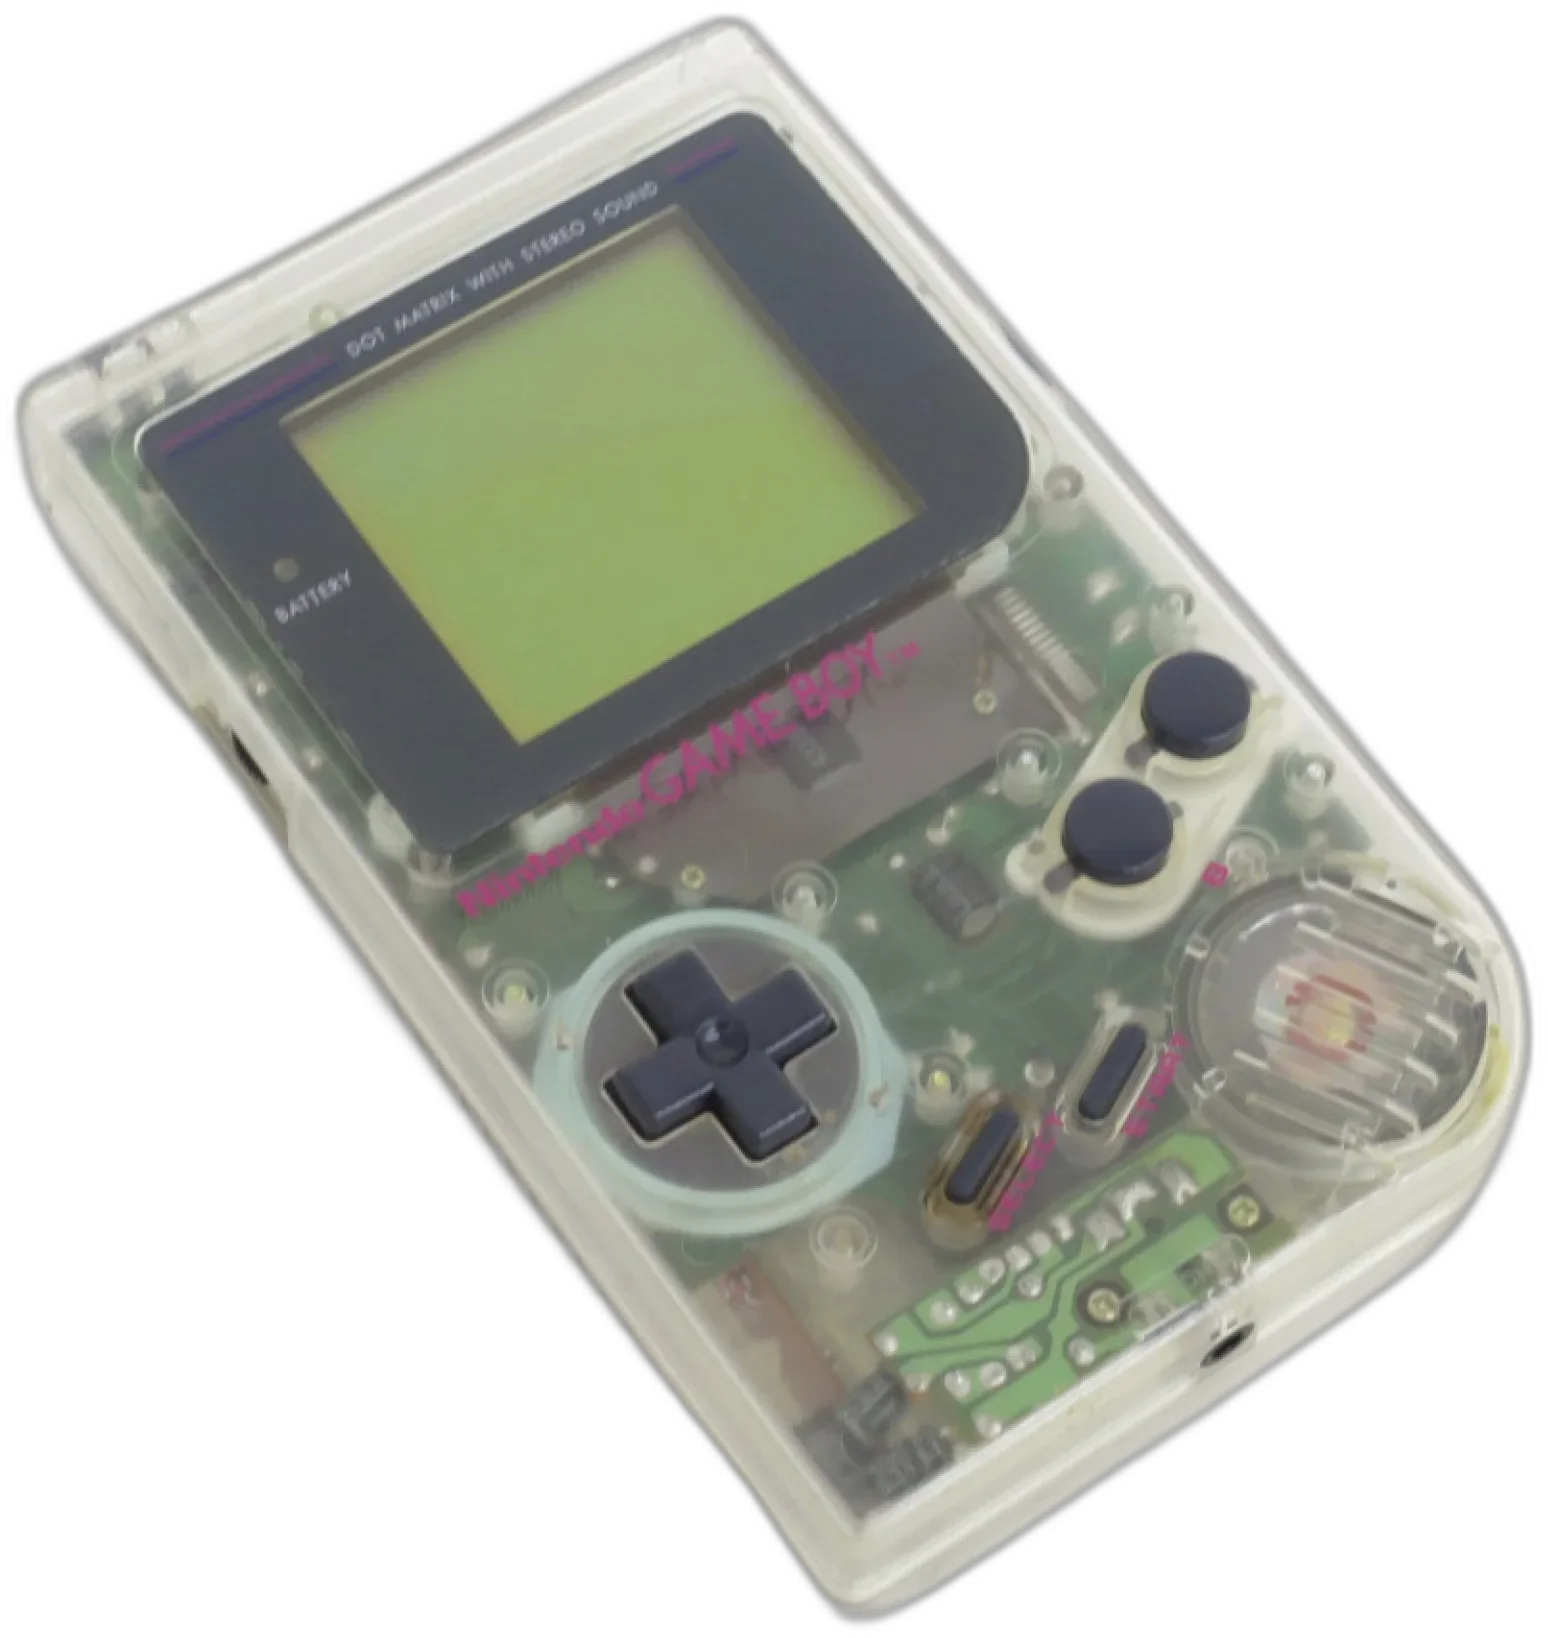 Nintendo Game Boy High Tech Transparent Console [EU]